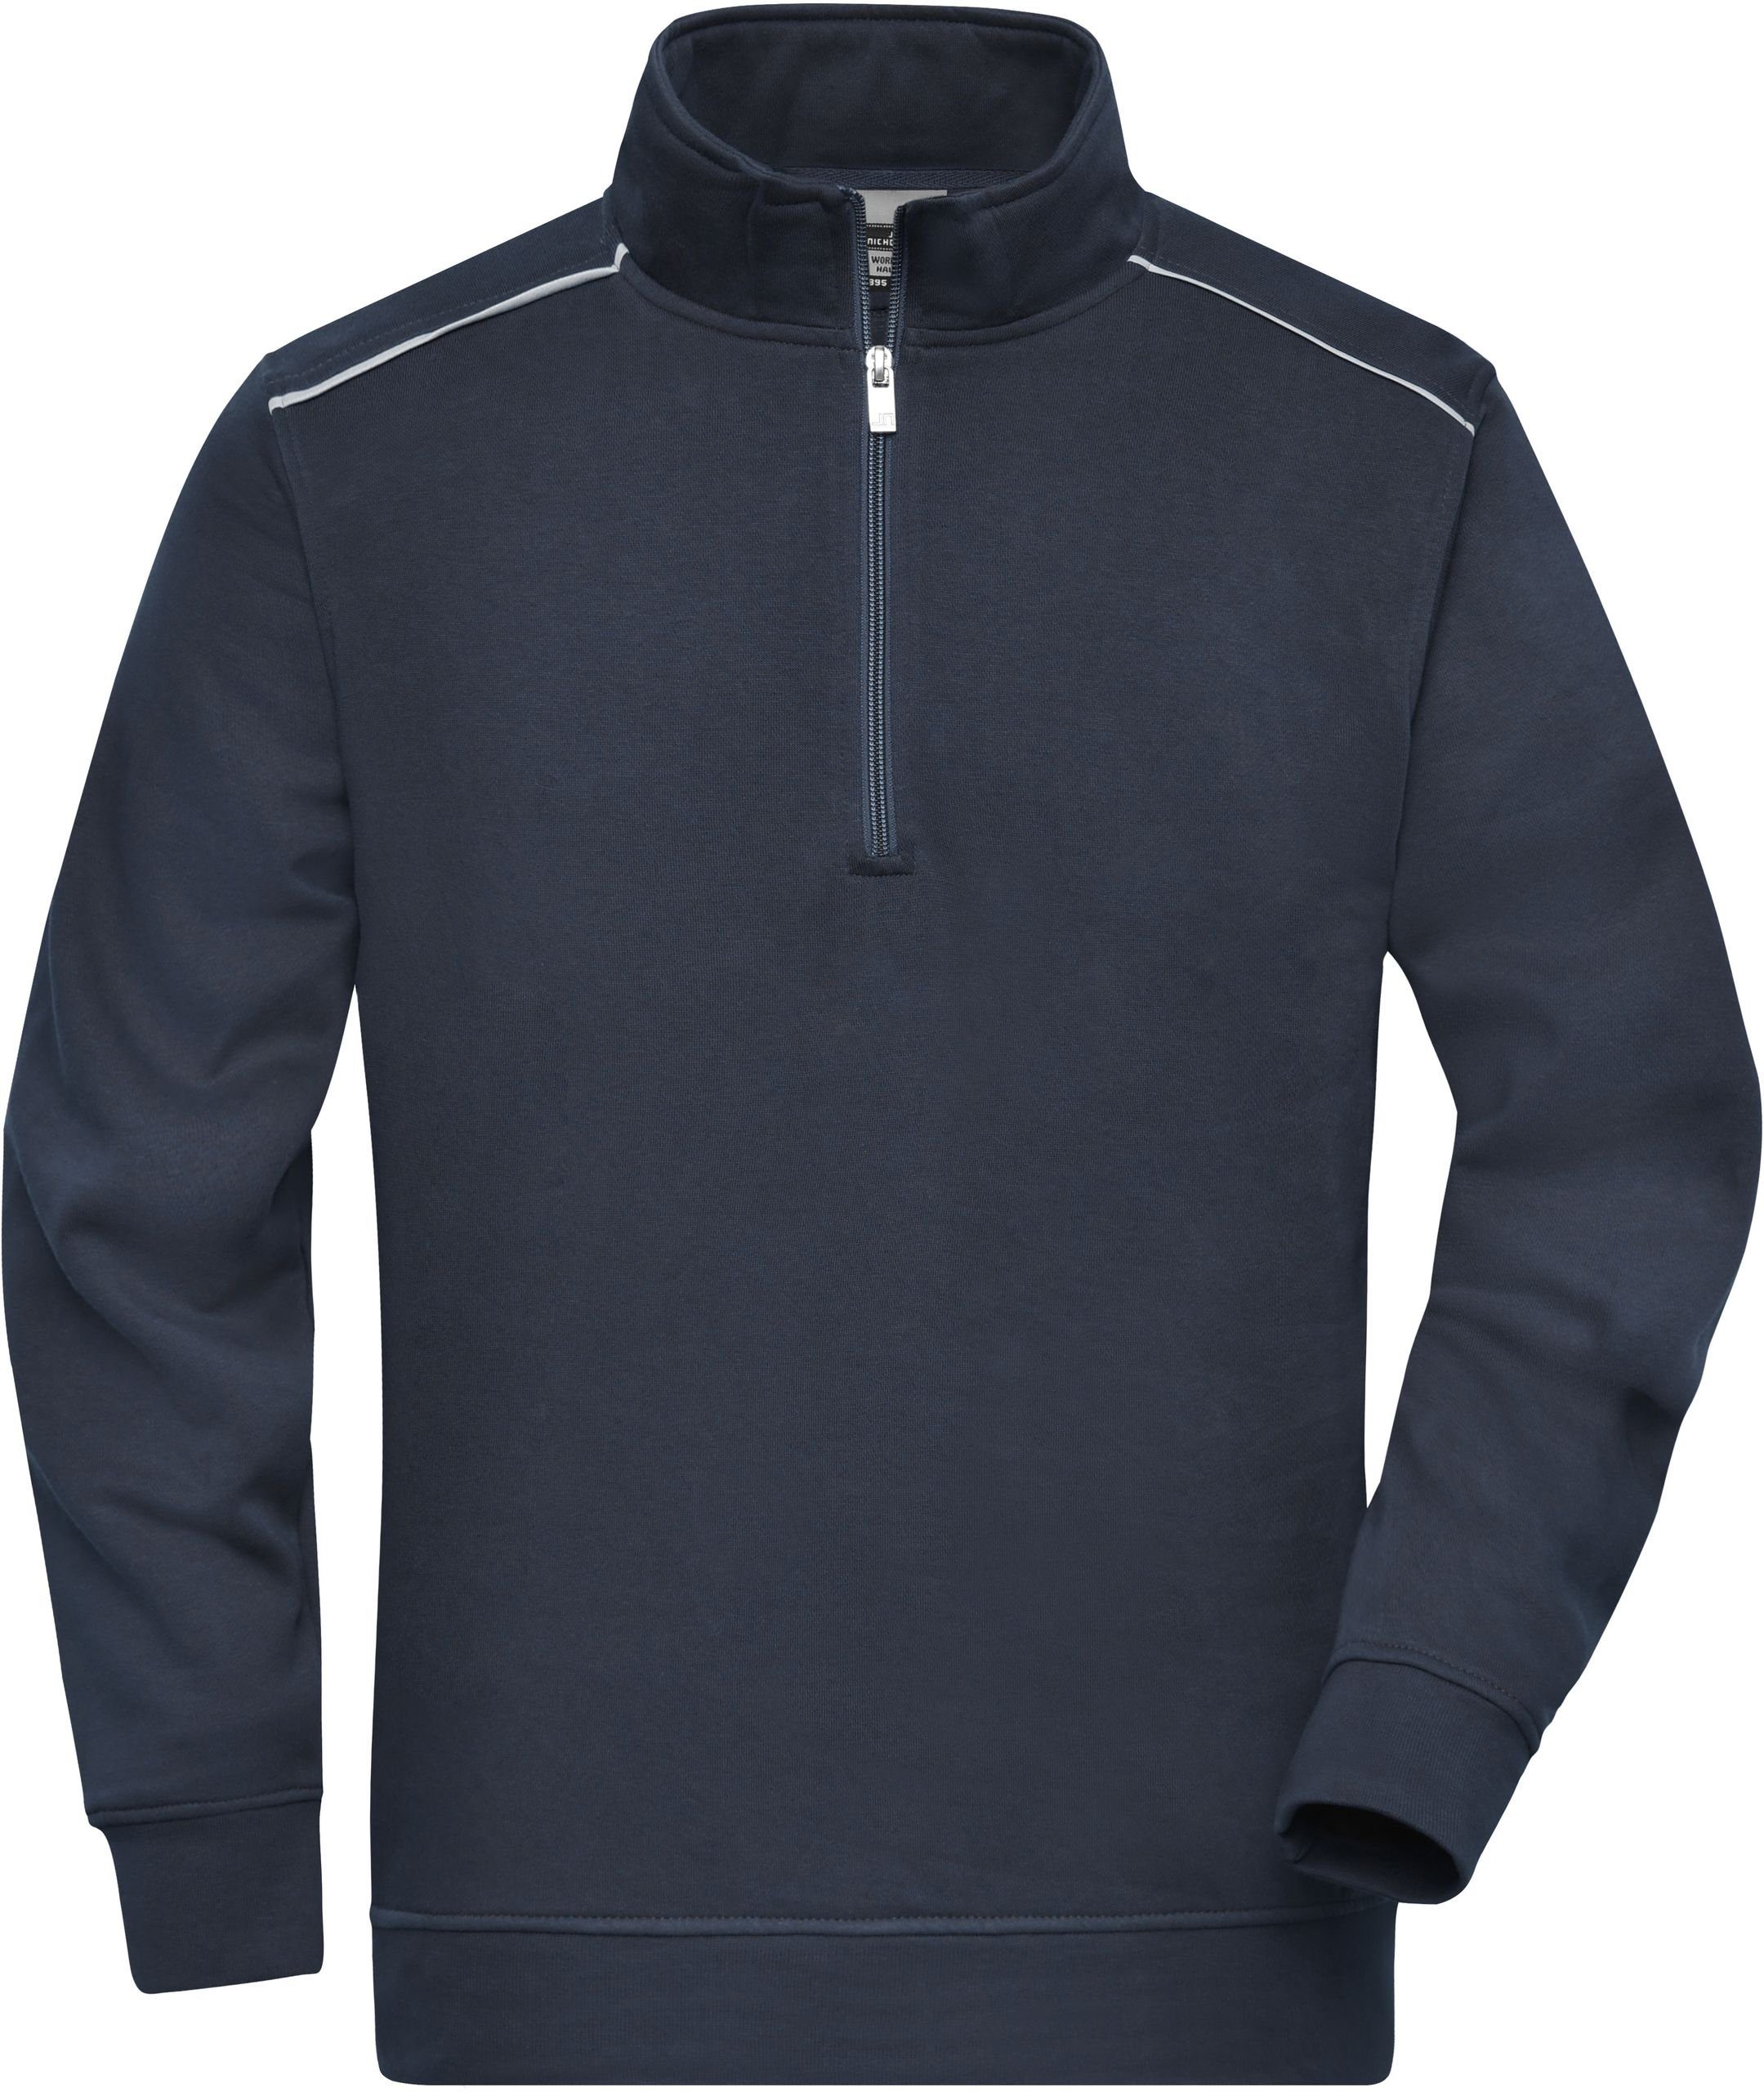 James & Nicholson Hoodie Workwear Halfzip Sweatshirt auch in großen Größen FaS50895 Navy